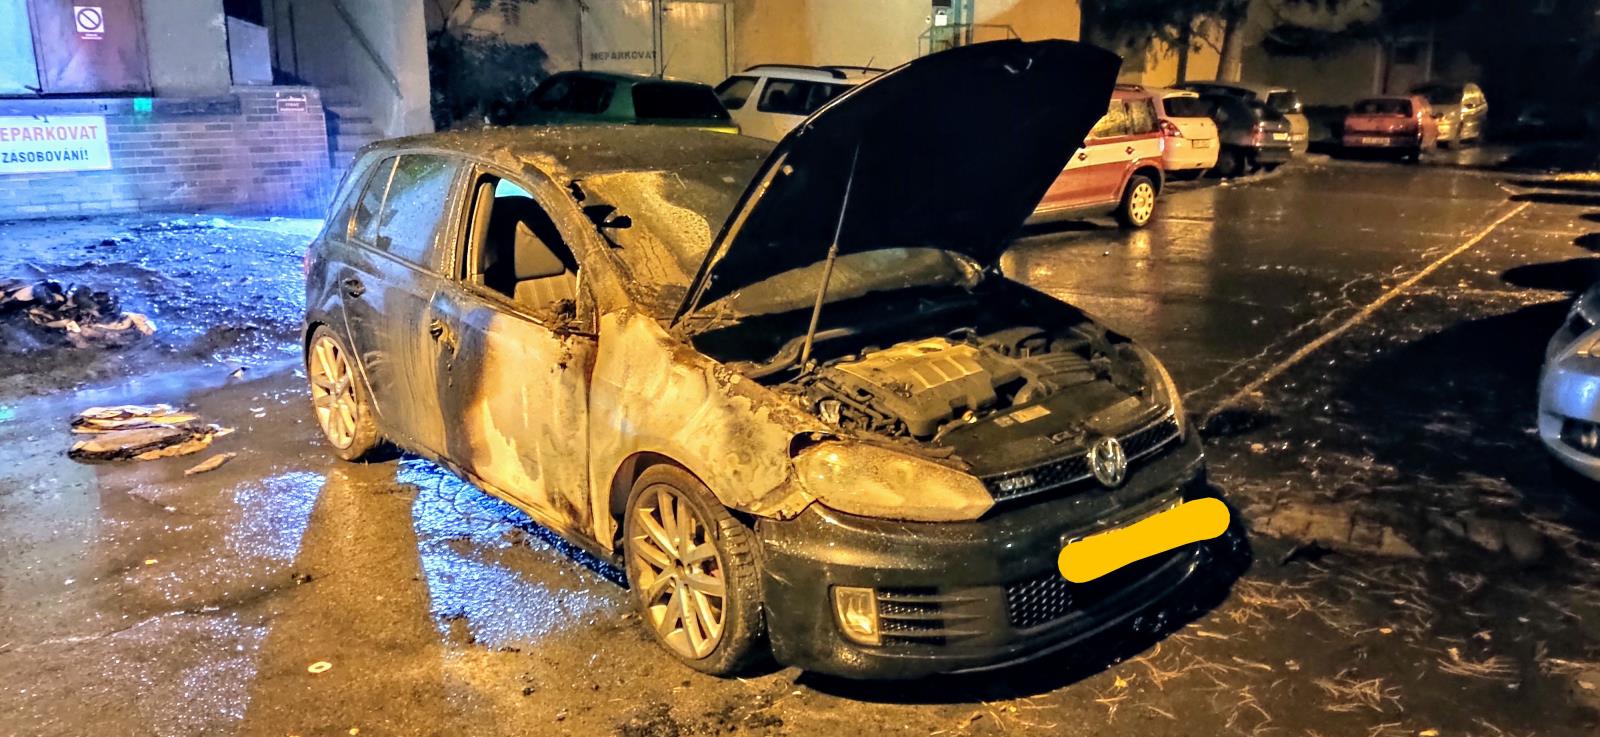 Požár popelnic a zaparkovaných aut v Děčíně (1).jpg